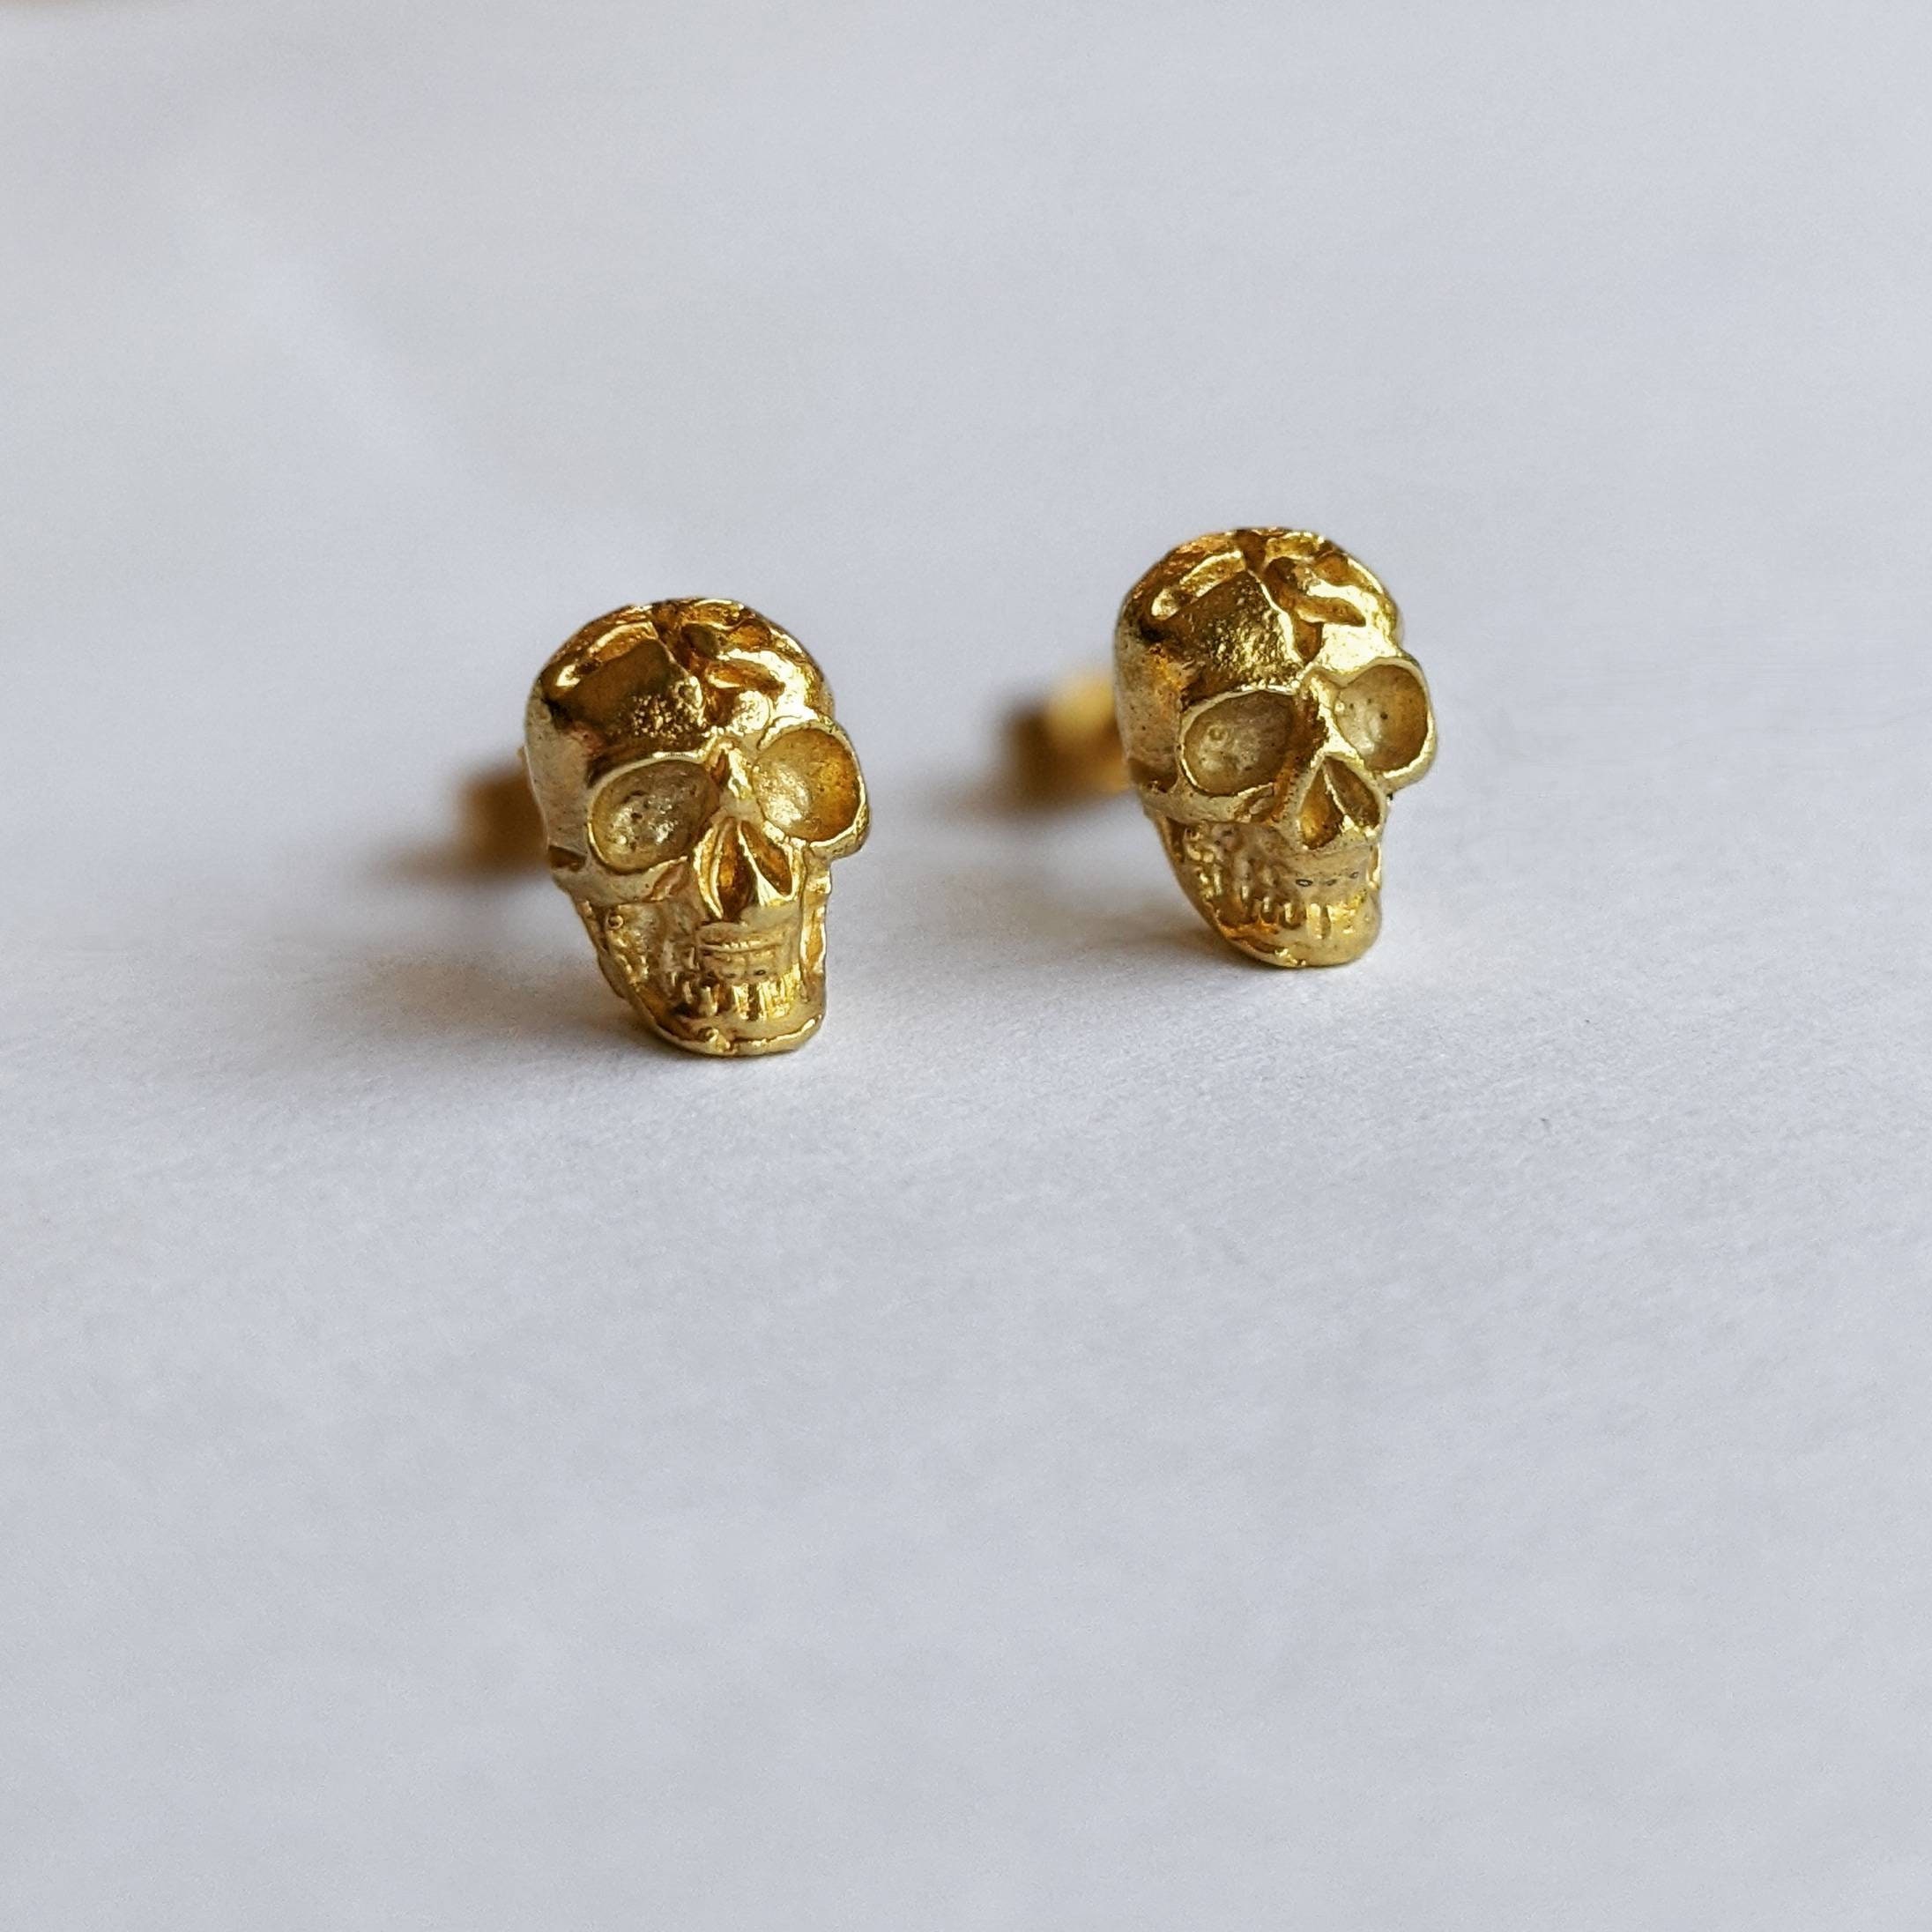 Gold Skull Stud Earrings Dainty Skull Studs 9ct Gold Unique - Etsy UK